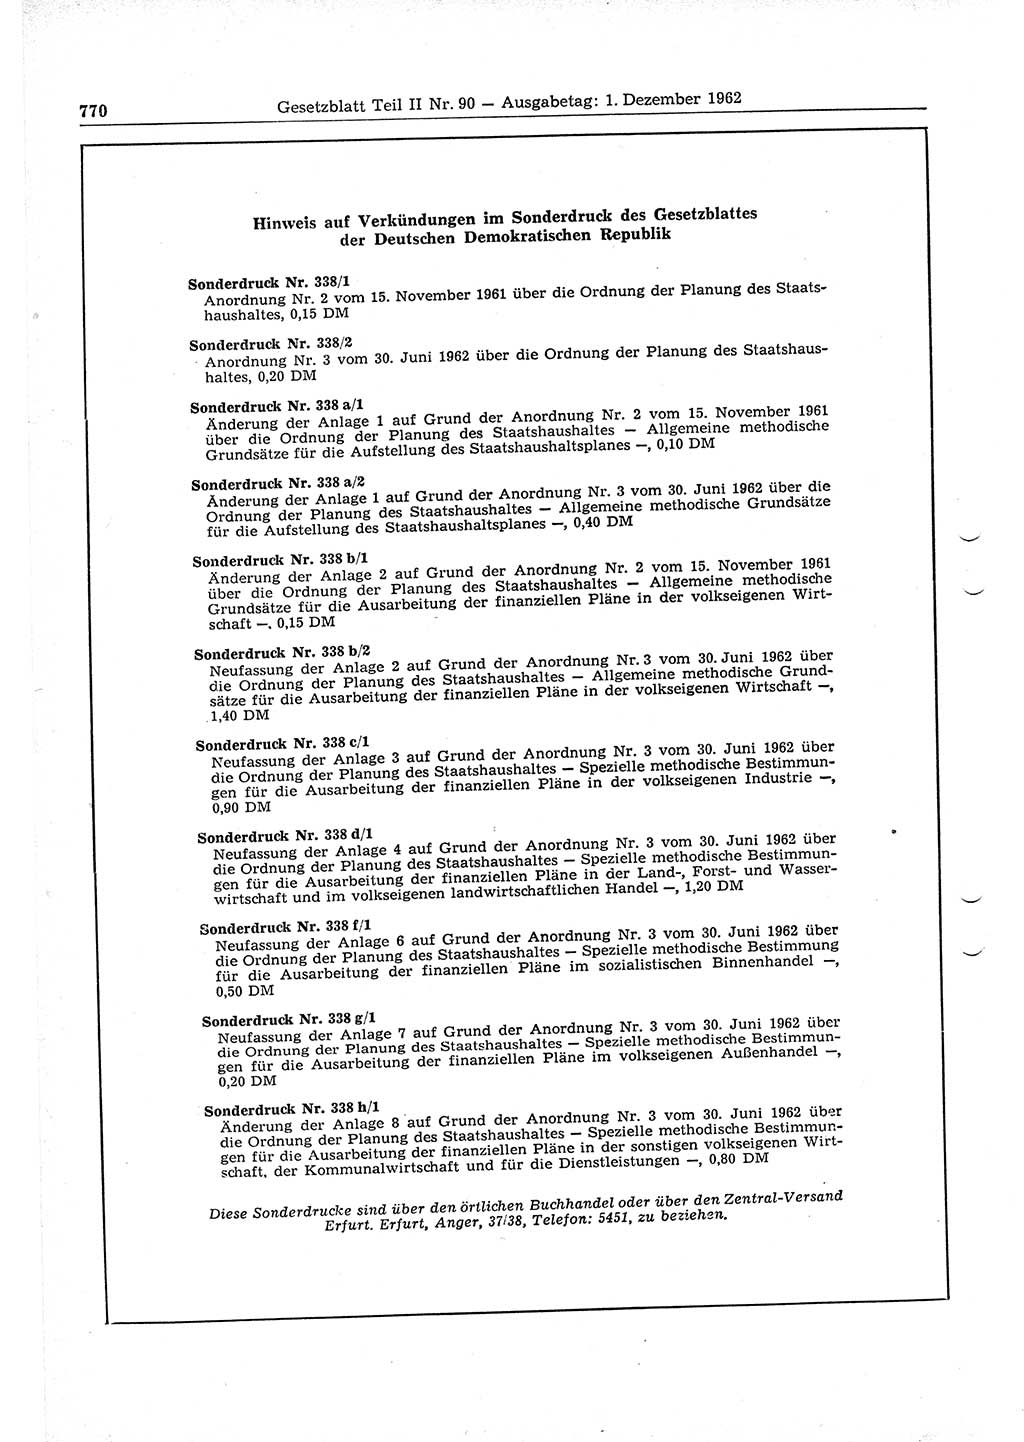 Gesetzblatt (GBl.) der Deutschen Demokratischen Republik (DDR) Teil ⅠⅠ 1962, Seite 770 (GBl. DDR ⅠⅠ 1962, S. 770)